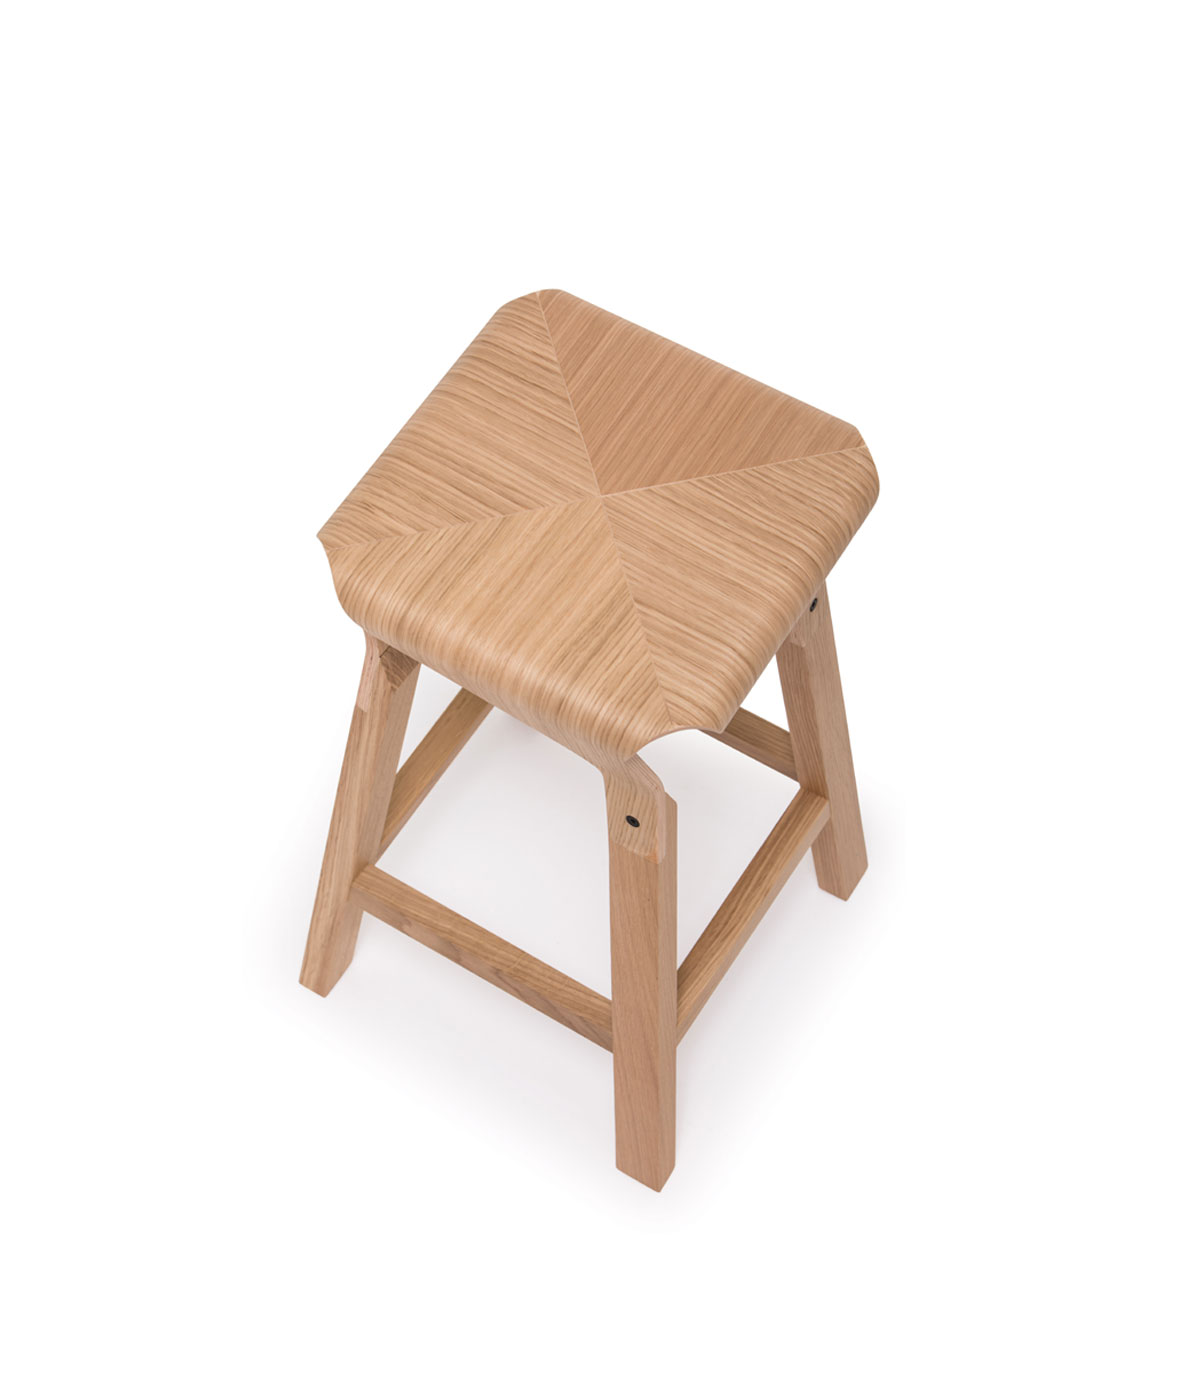 Naoshima medium stool - Vergés